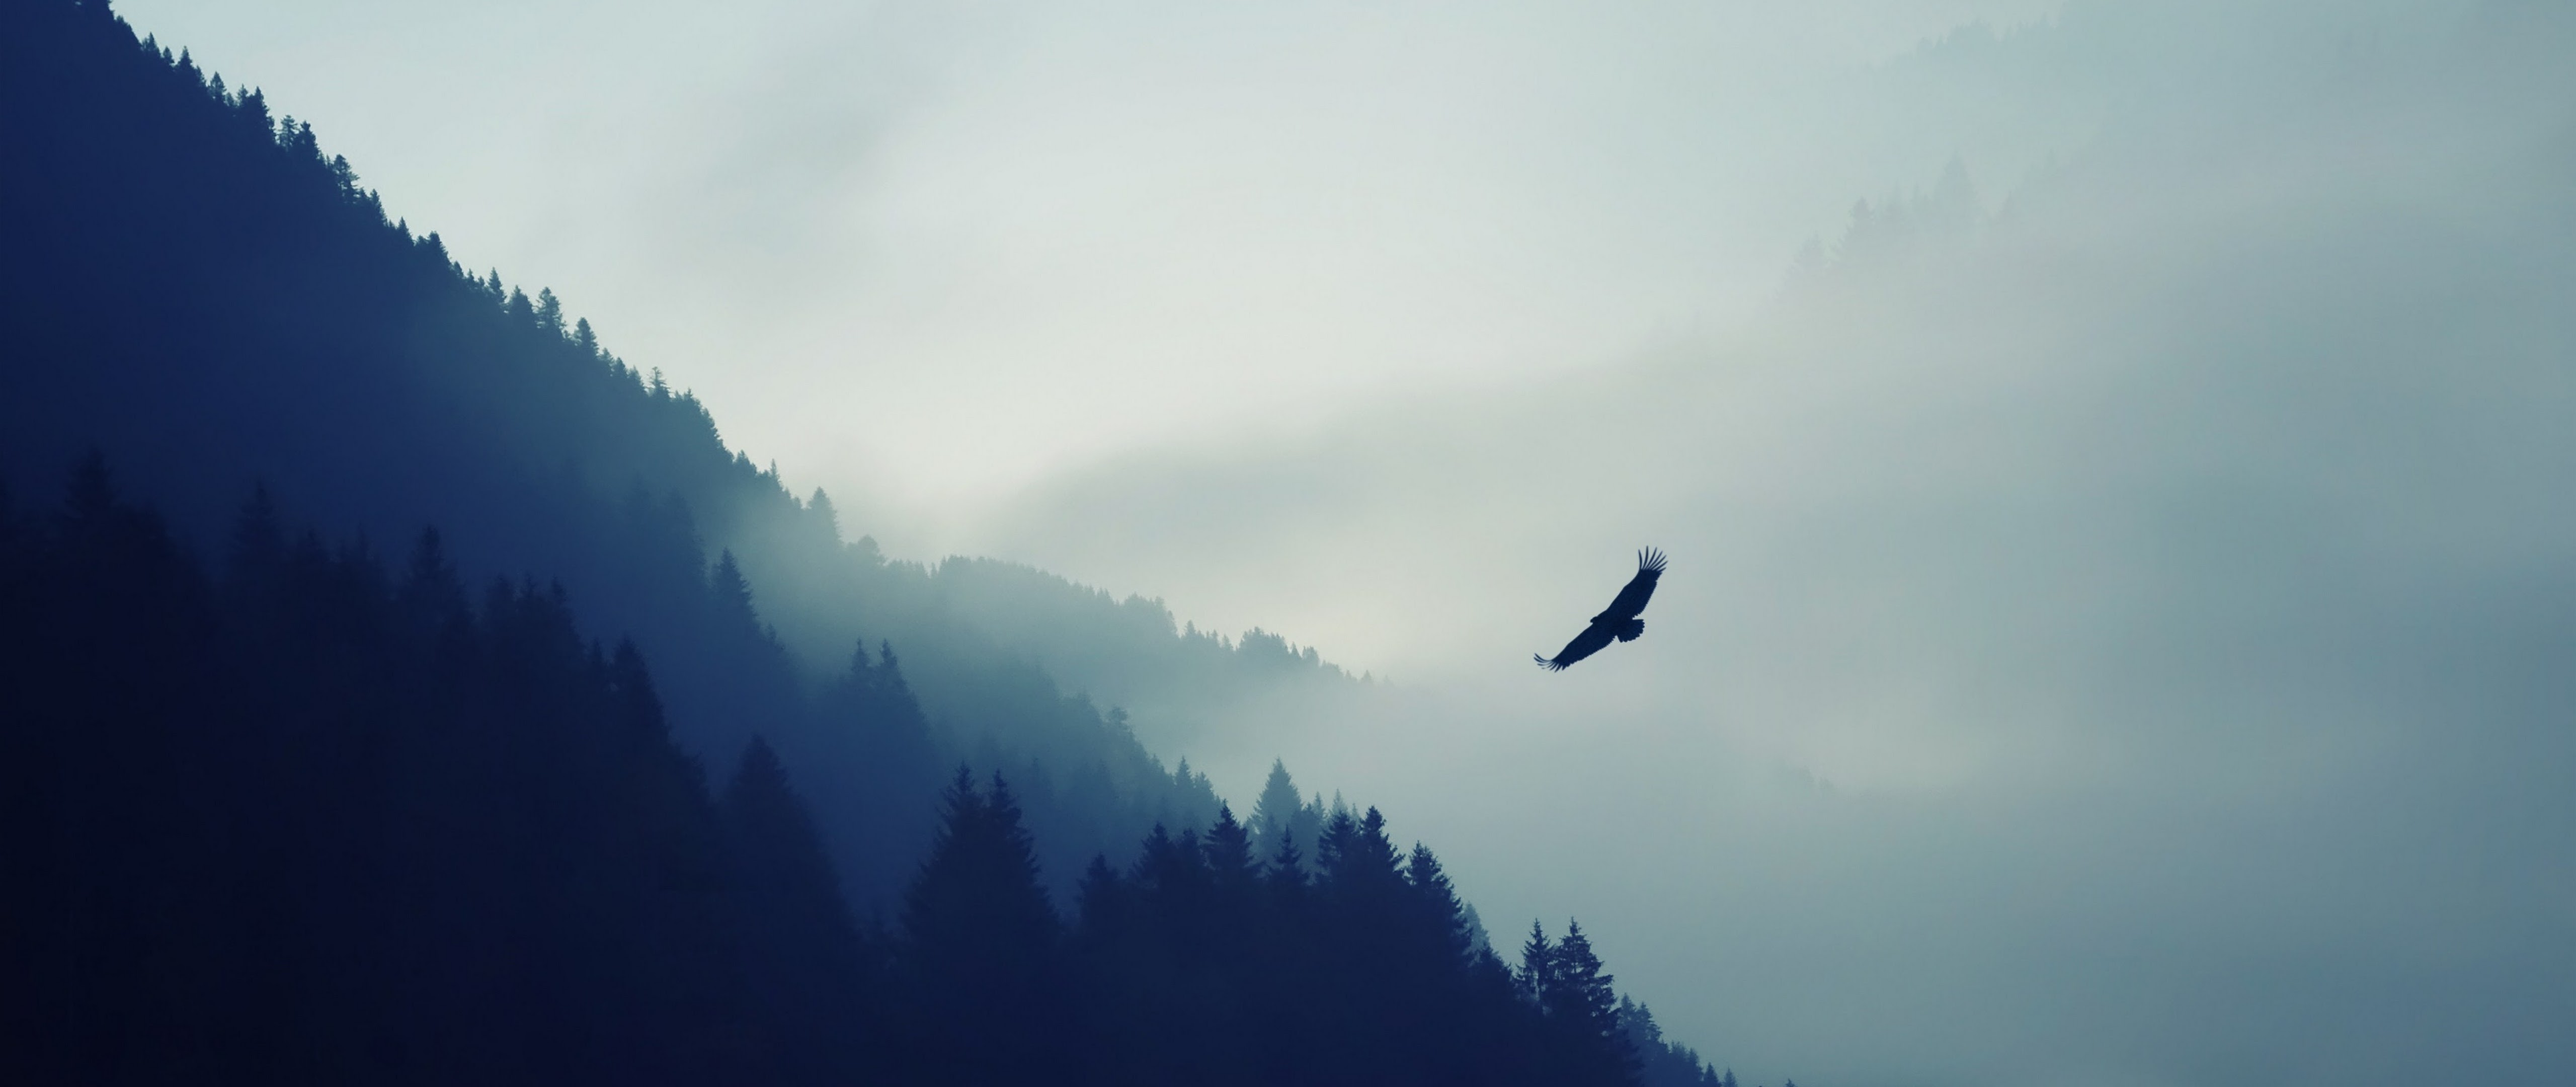 Обложки для вк профиля 1920х640. Птицы над лесом. Лес горы. Птицы в небе. Горы в тумане.